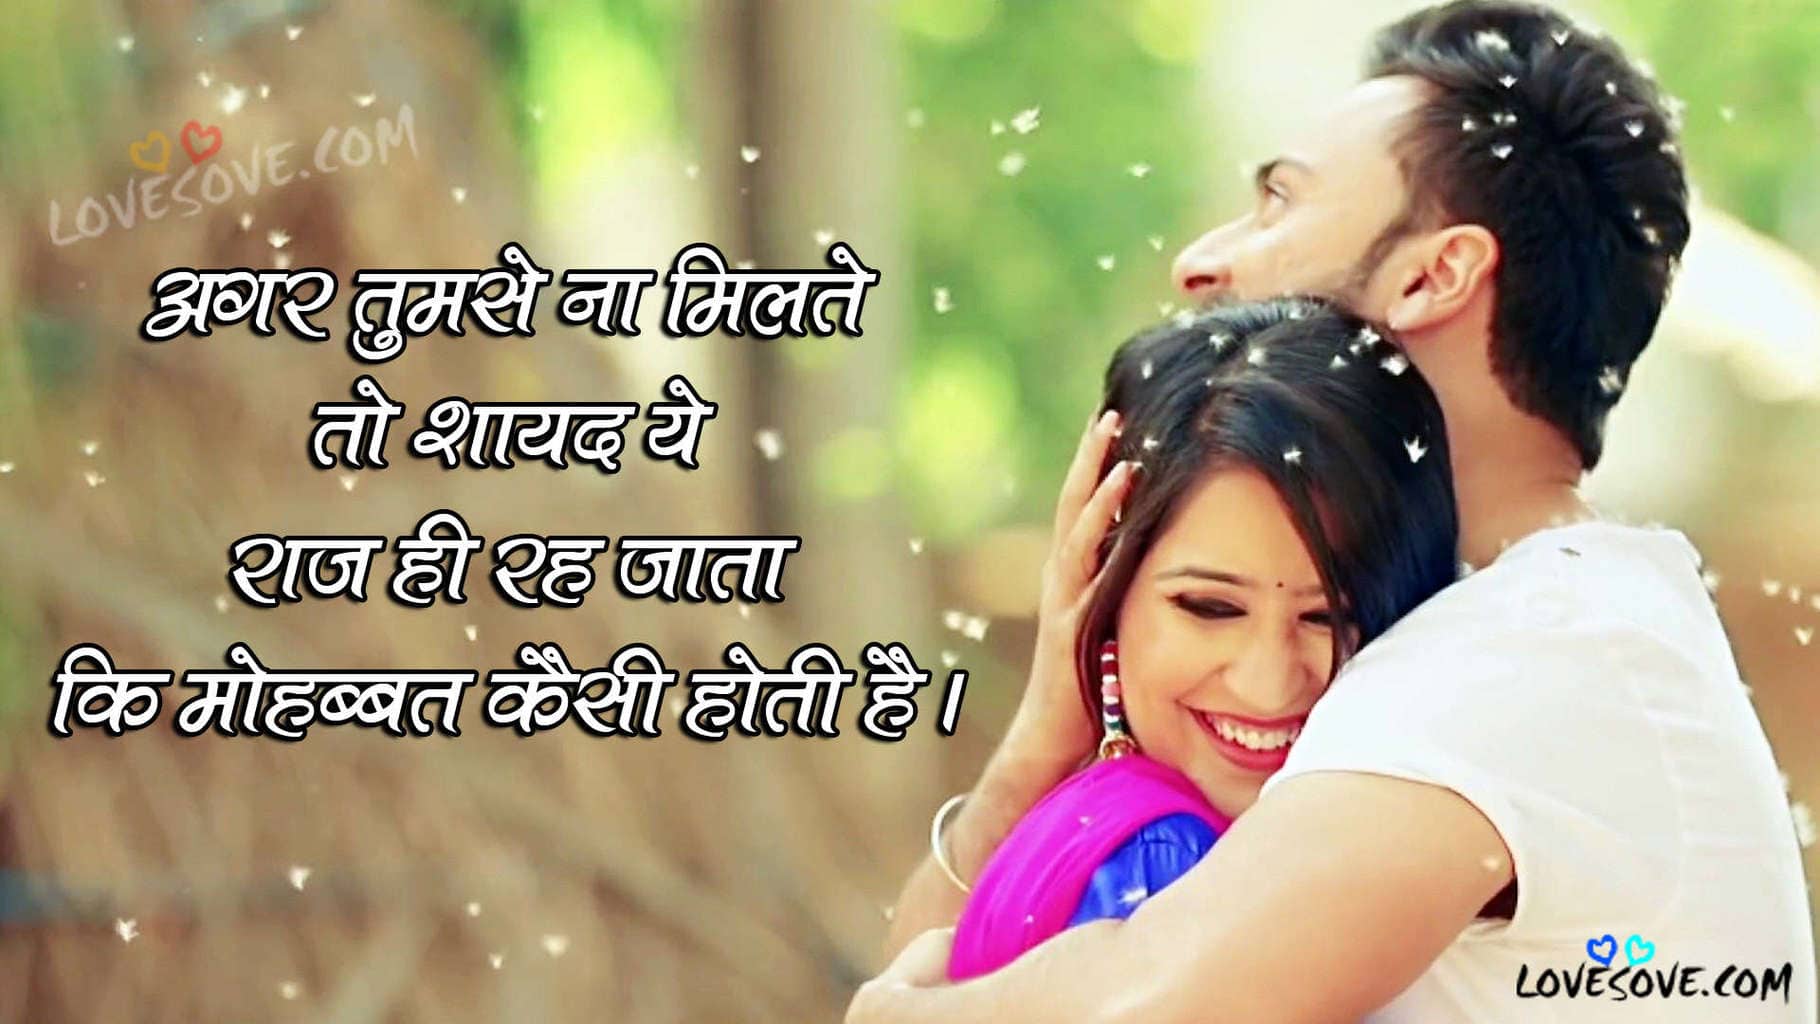 Hindi Love lines, Love Romantic Shayari, Hindi Quotes On Love